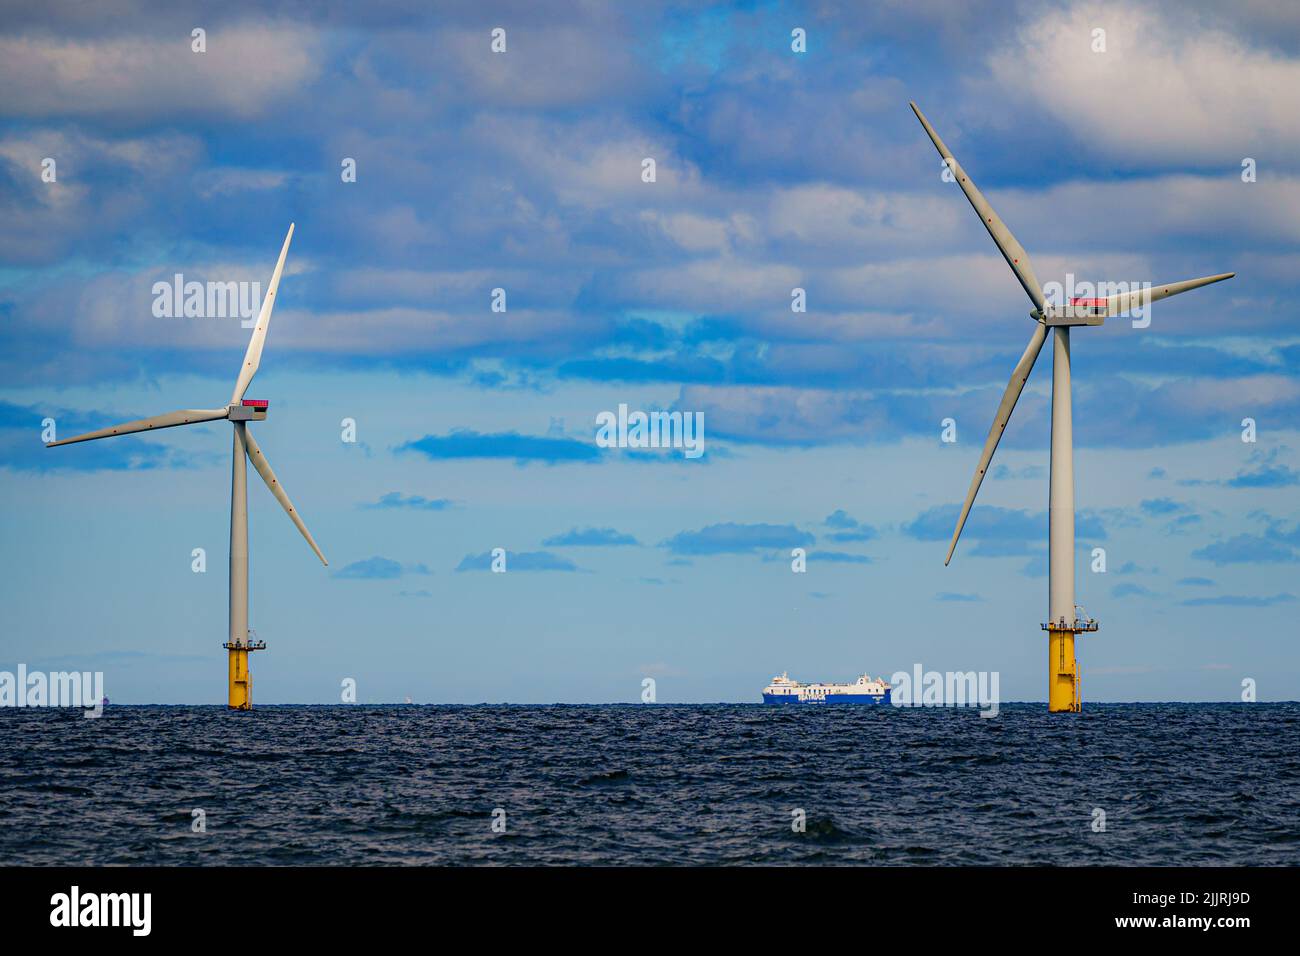 Un barco pasa por turbinas eólicas en Gwynt y Mor de RWE, el 2nd parque eólico marino más grande del mundo, situado a ocho millas de la costa de Liverpool Bay, frente a la costa del norte de Gales. Fecha de la foto: Martes 26 de julio de 2022. Foto de stock